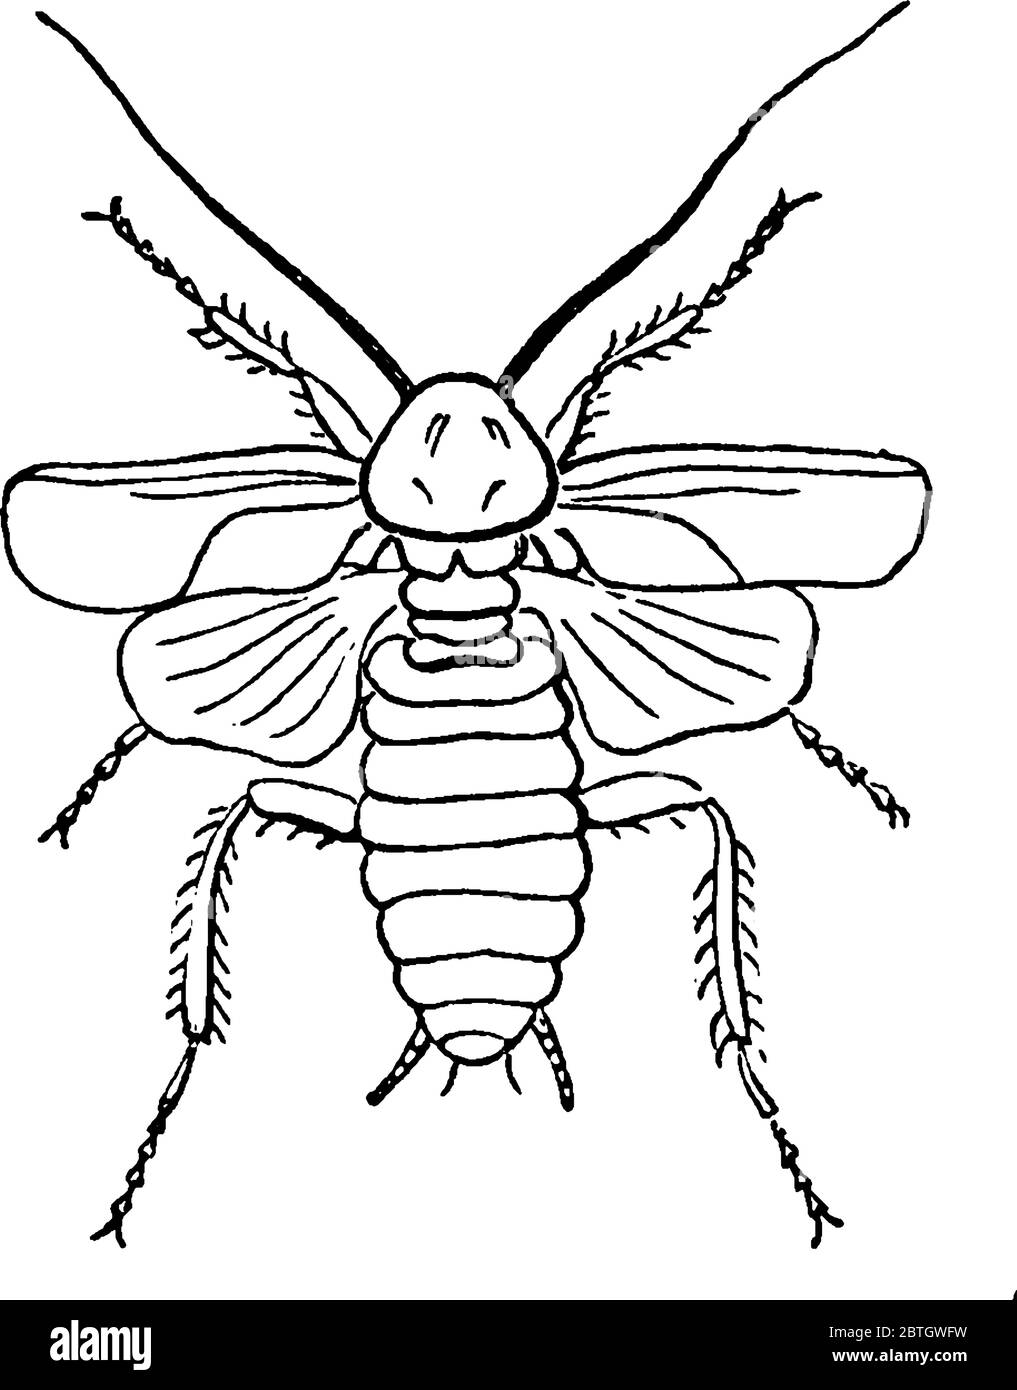 Les cafards sont des insectes de l'ordre de Blatodea, qui comprend également des termites, un dessin de ligne vintage ou une illustration de gravure. Illustration de Vecteur